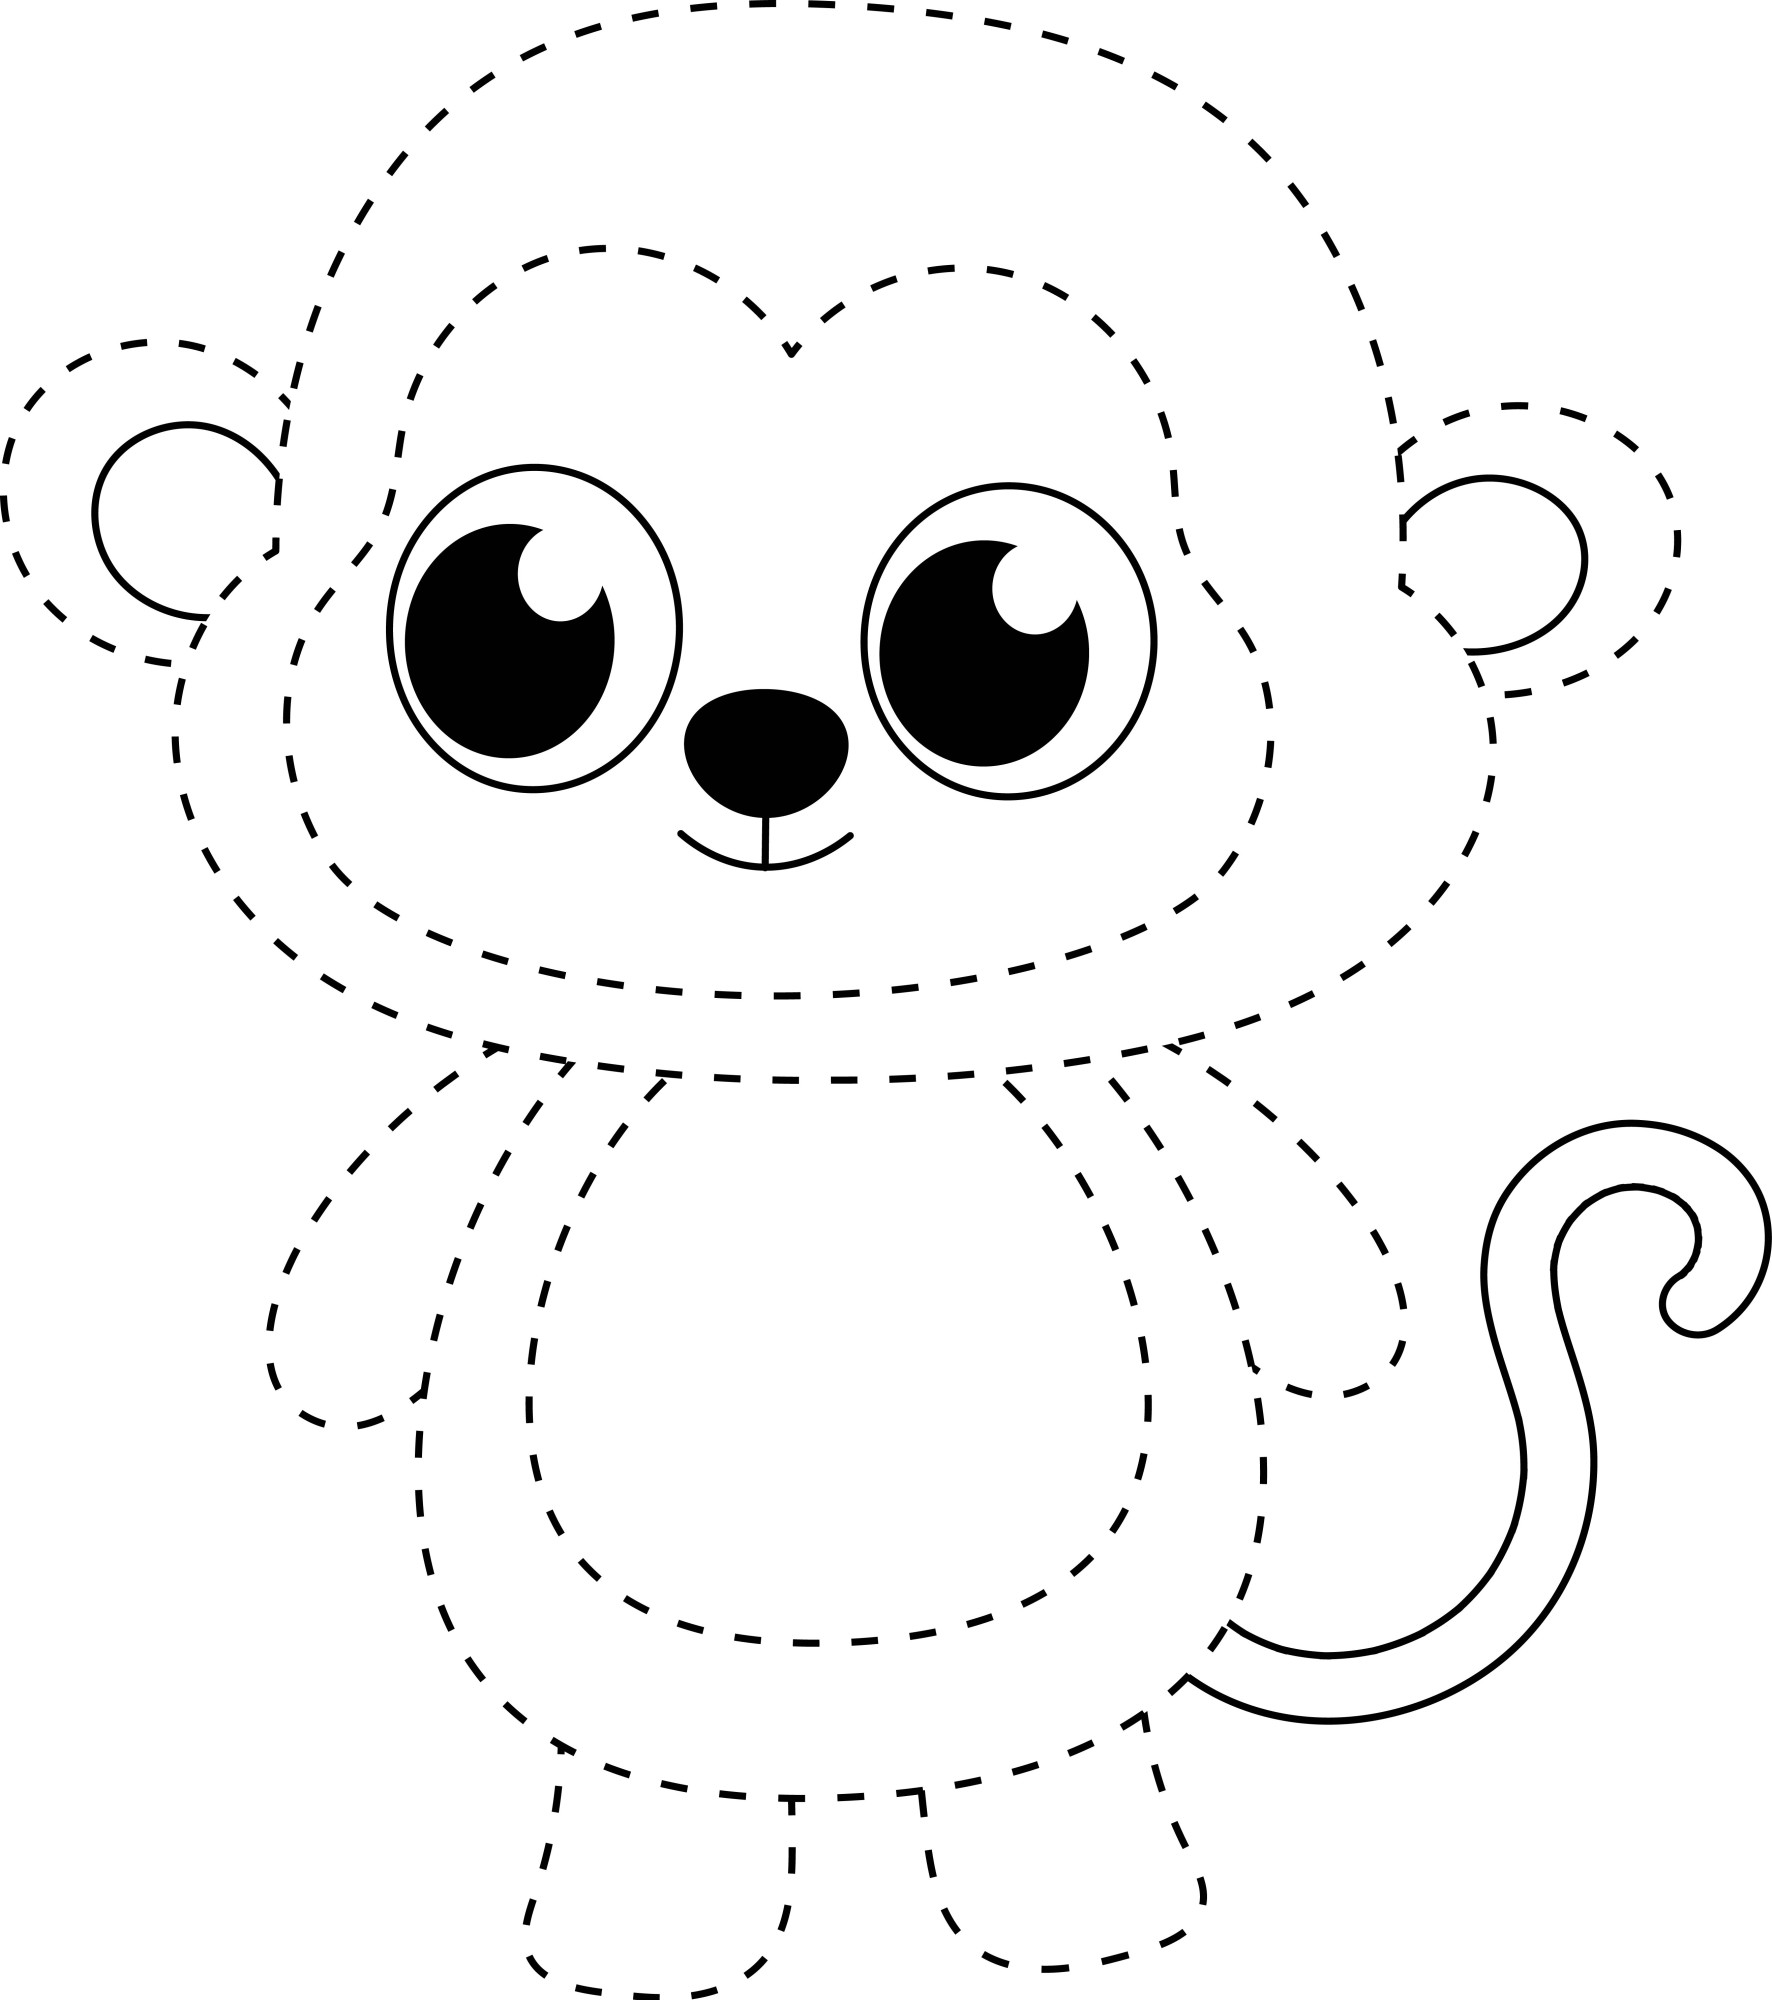 Раскраска для детей: обезьяна по точкам